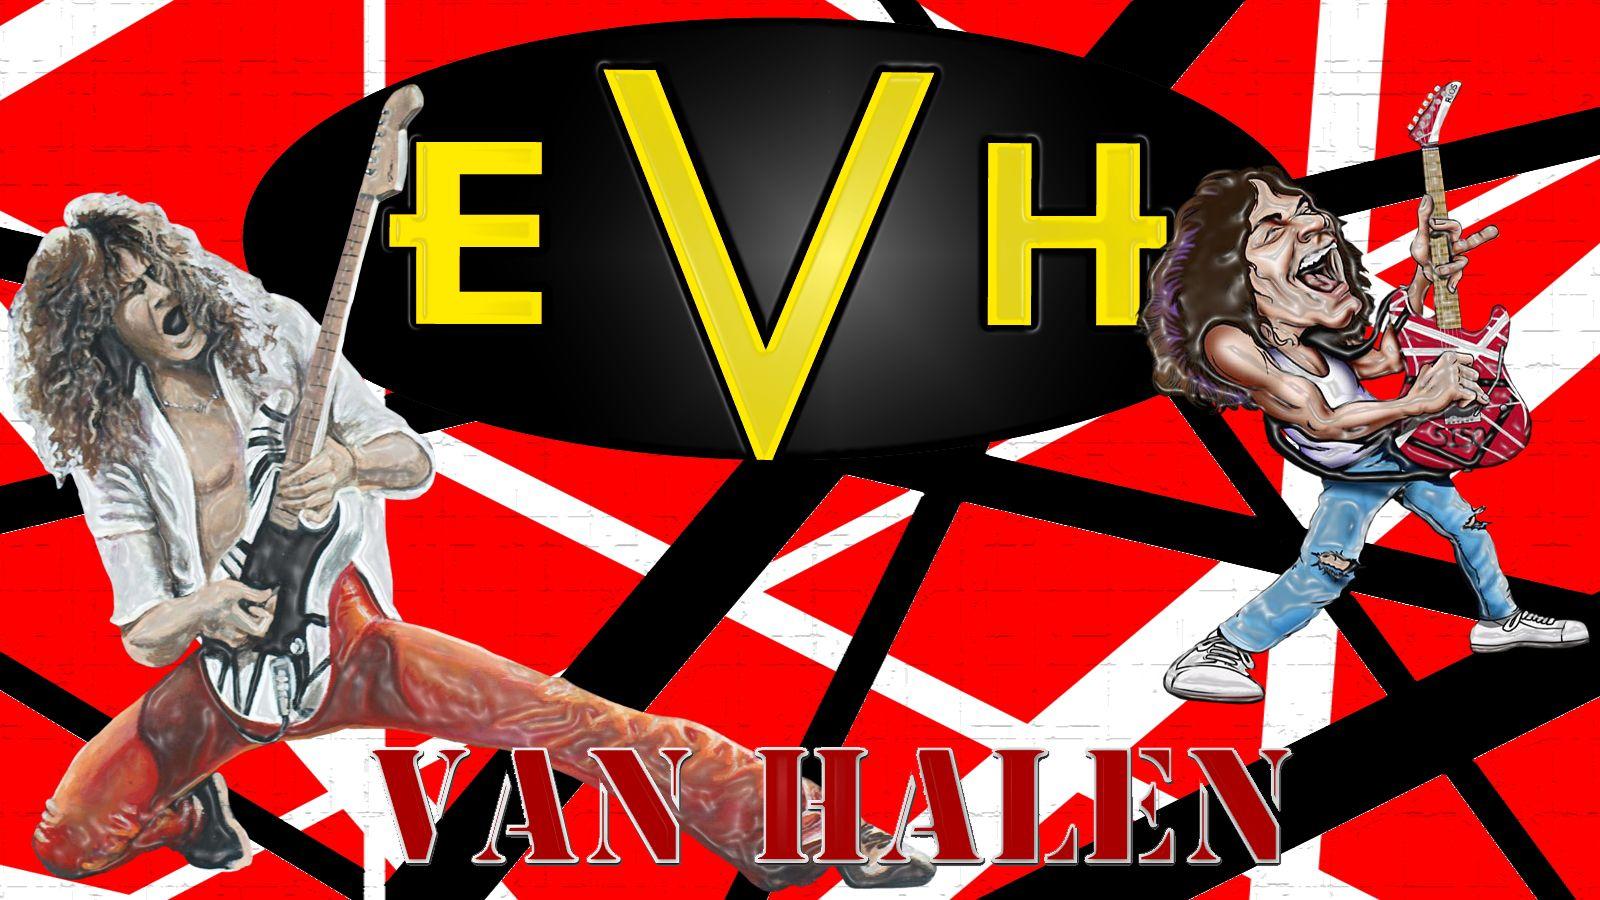 Eddie Van Halen Wallpaper and Background Imagex900